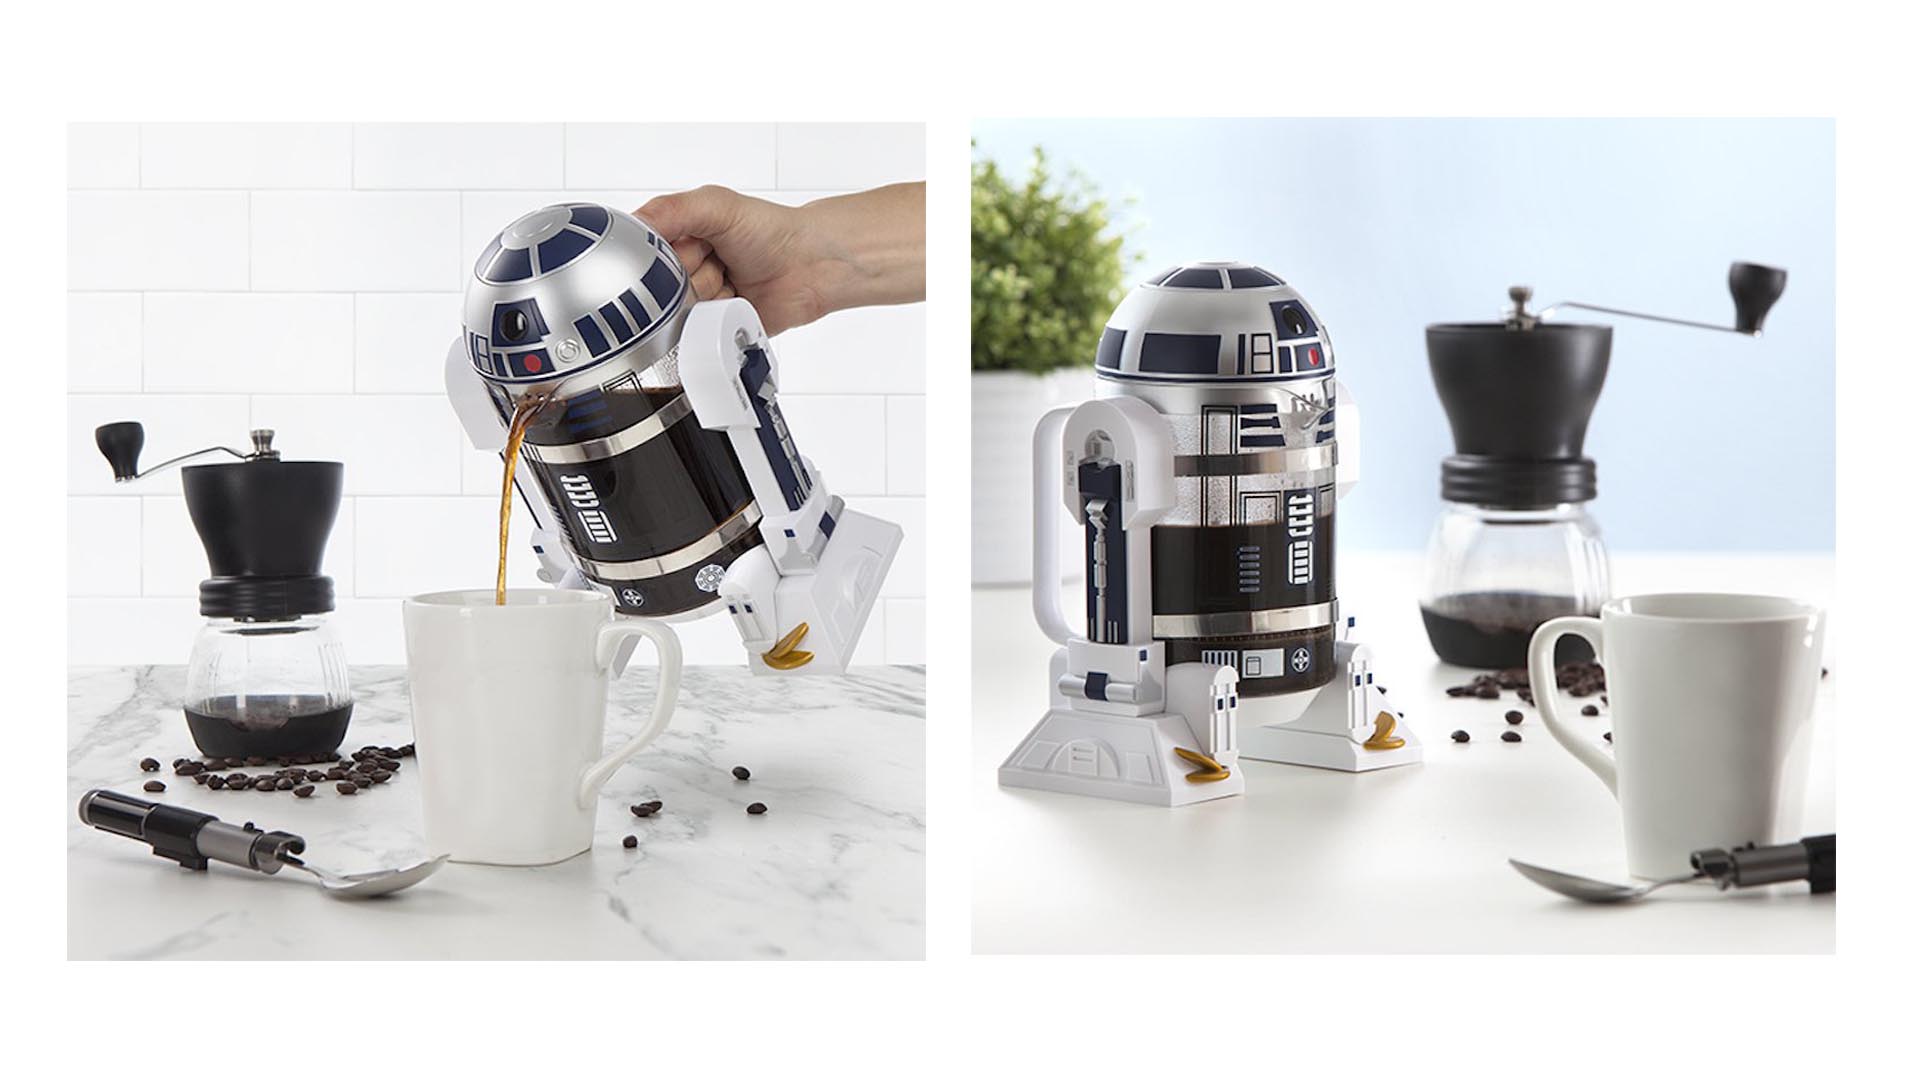 Ahora R2-D2 ayudará a los humanos dándoles energía para lograr sus actividades del día